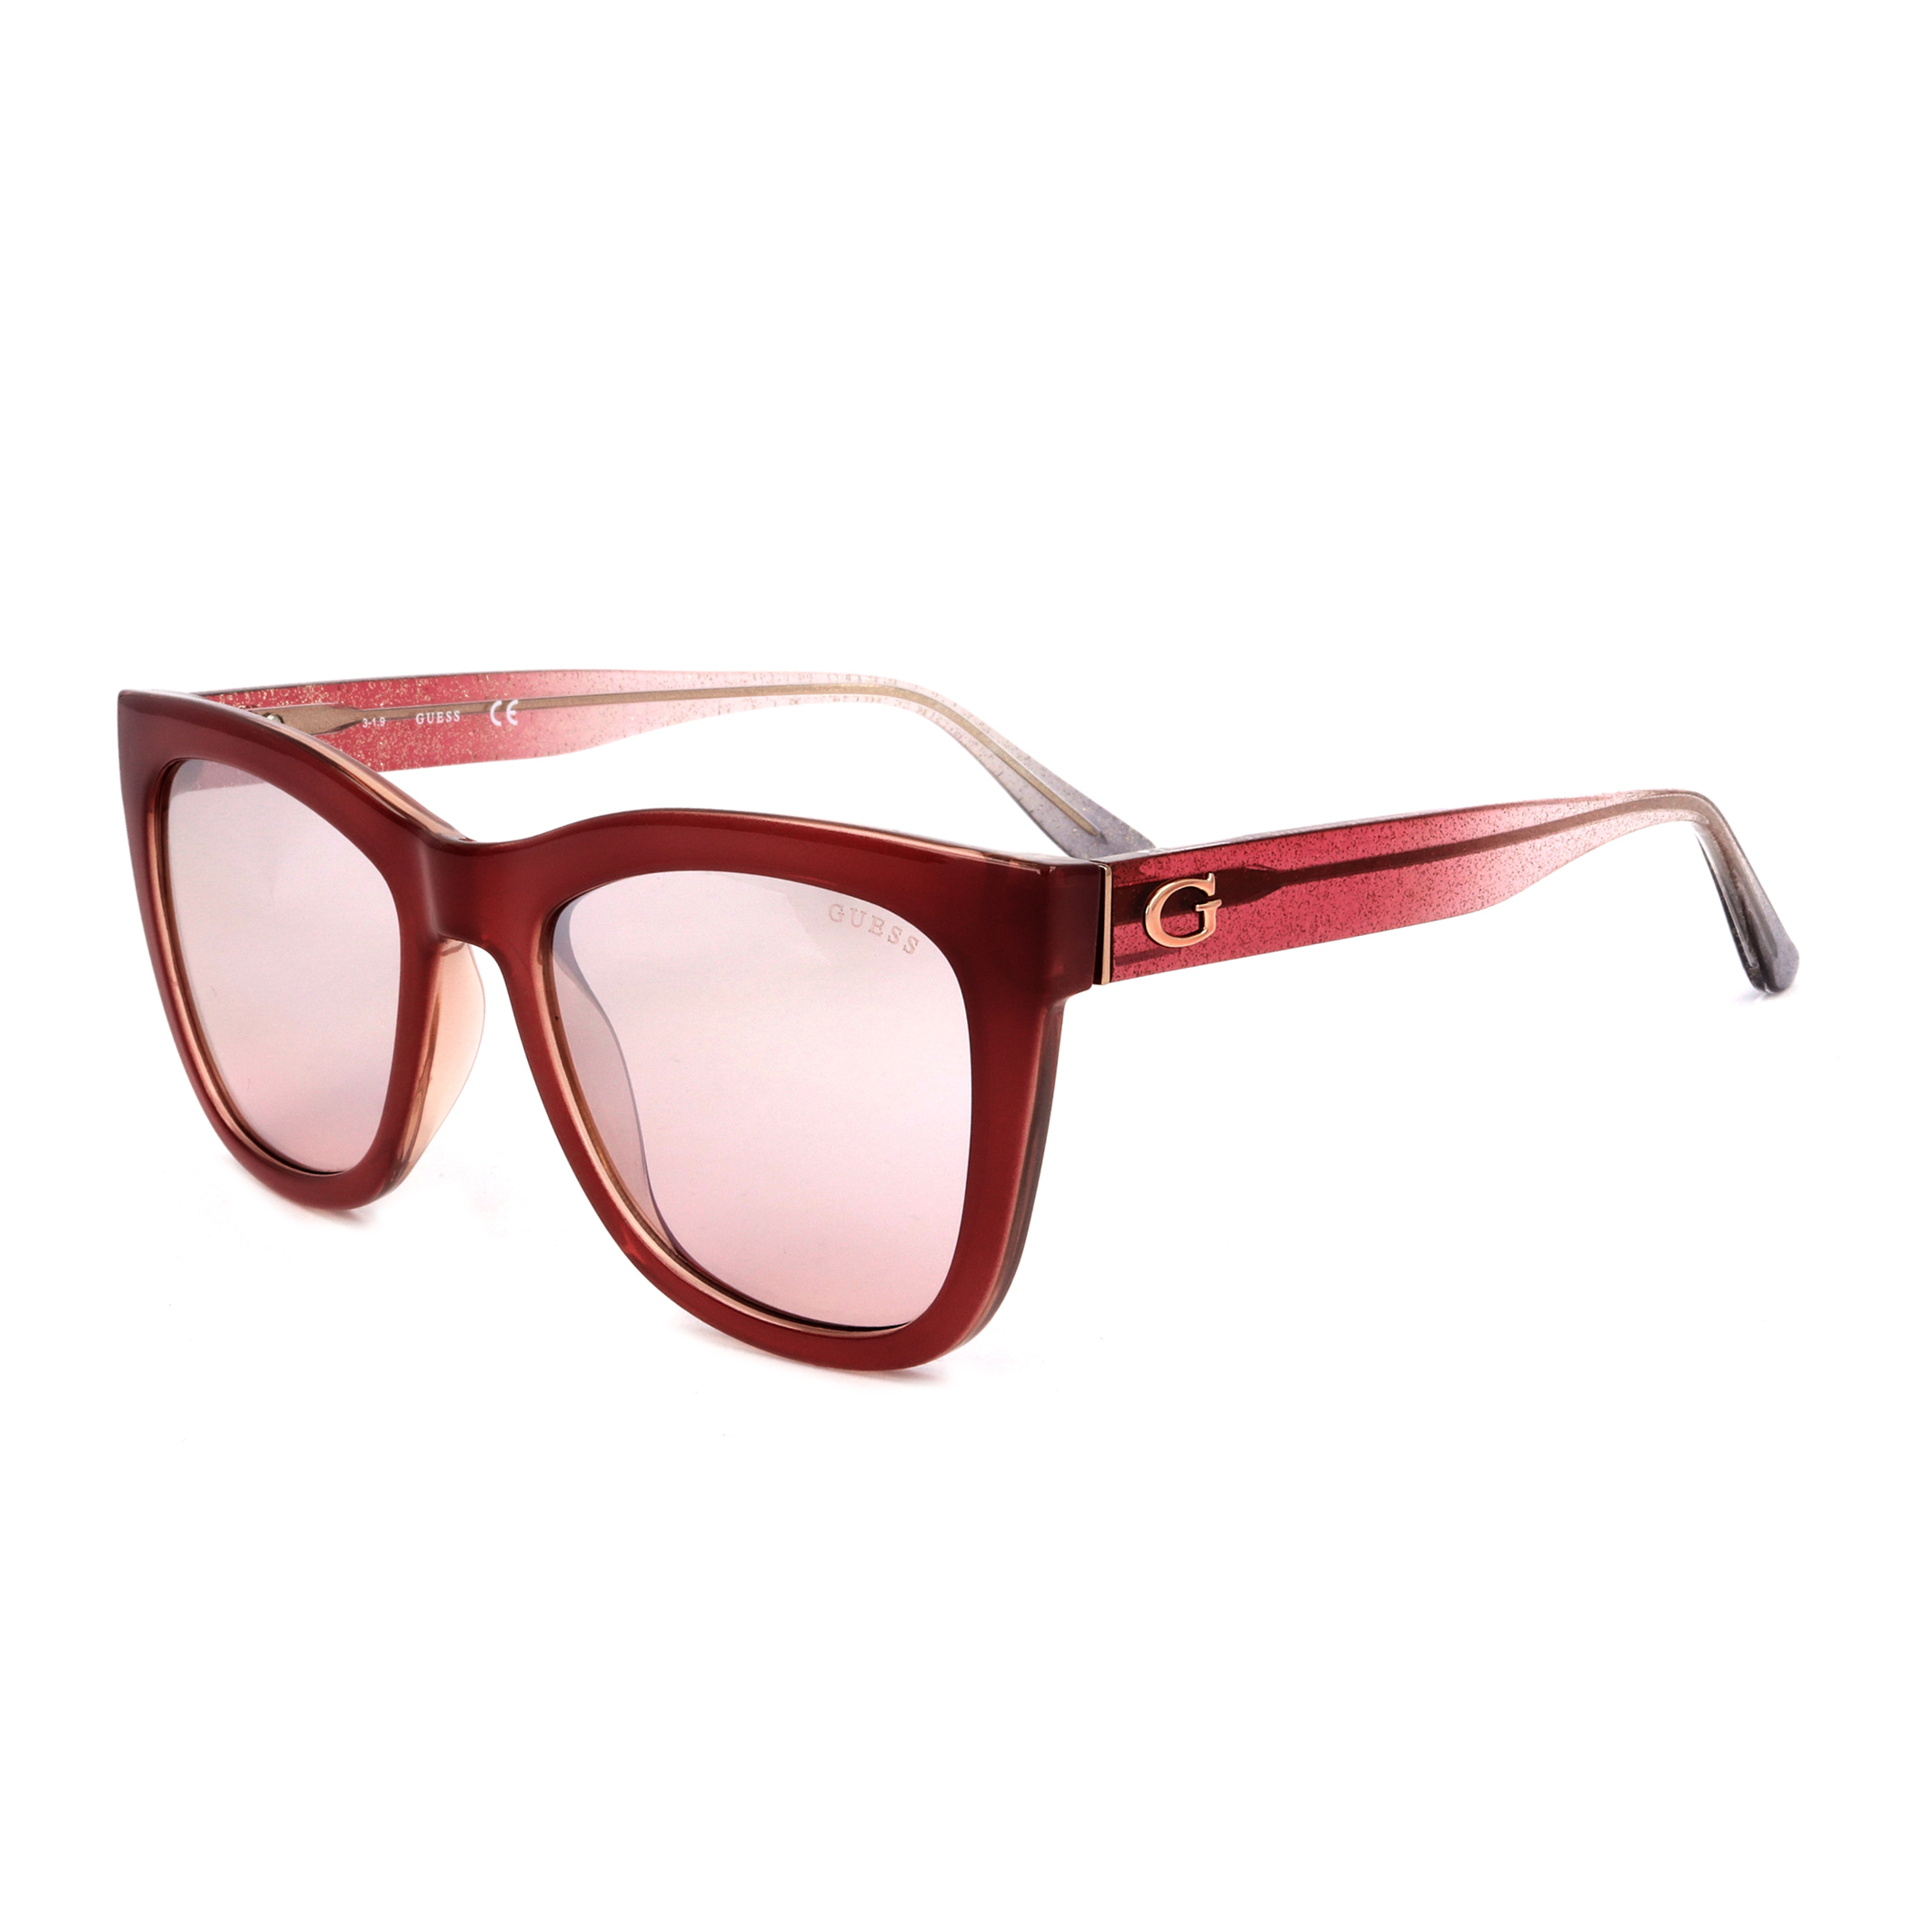 Guess Women Sunglasses GU7552 Pink